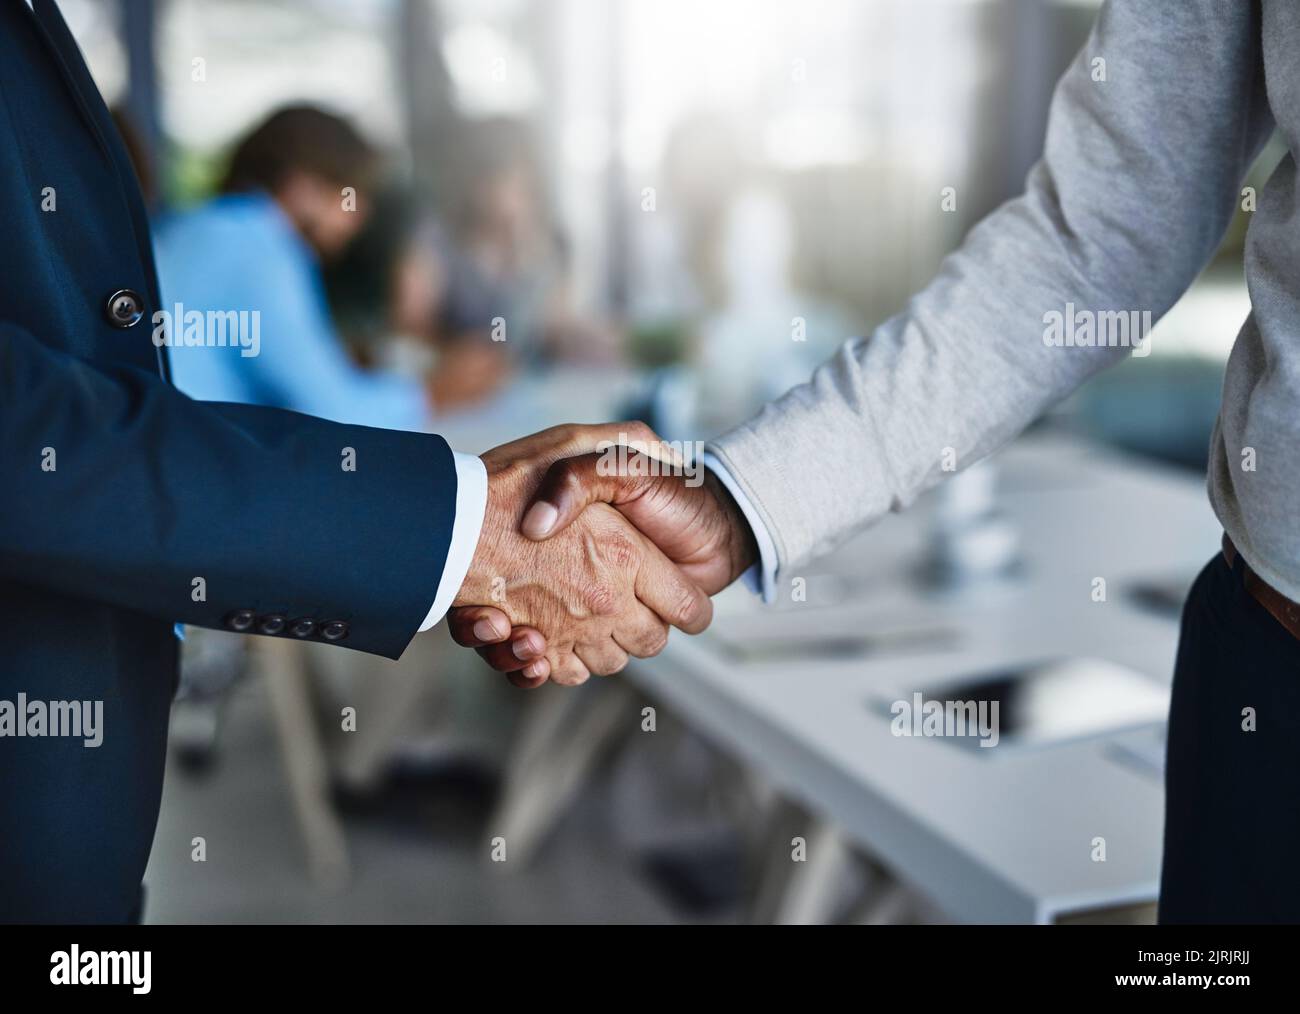 Coltivare solide relazioni commerciali con solide capacità di negoziazione. Due uomini d'affari scuotono le mani durante una riunione sul lavoro. Foto Stock